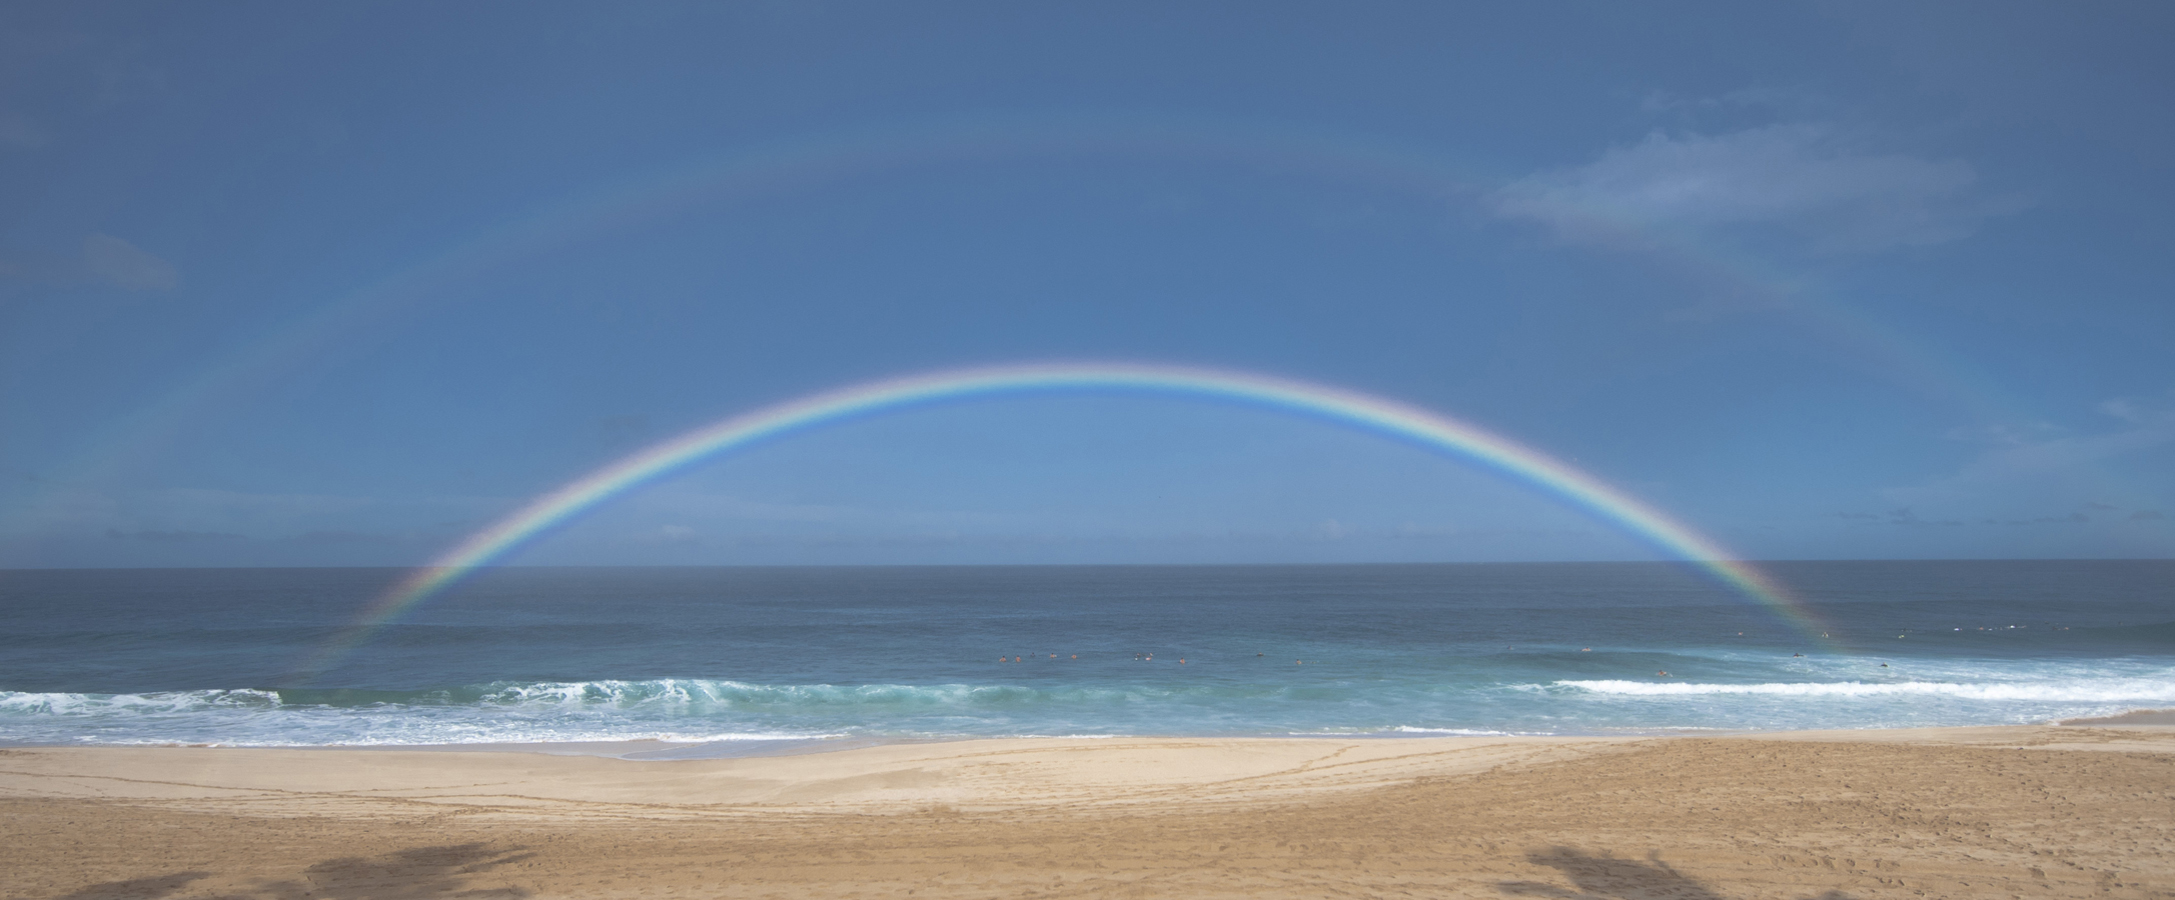 [Full rainbow] Photo by Ruben Carillo.